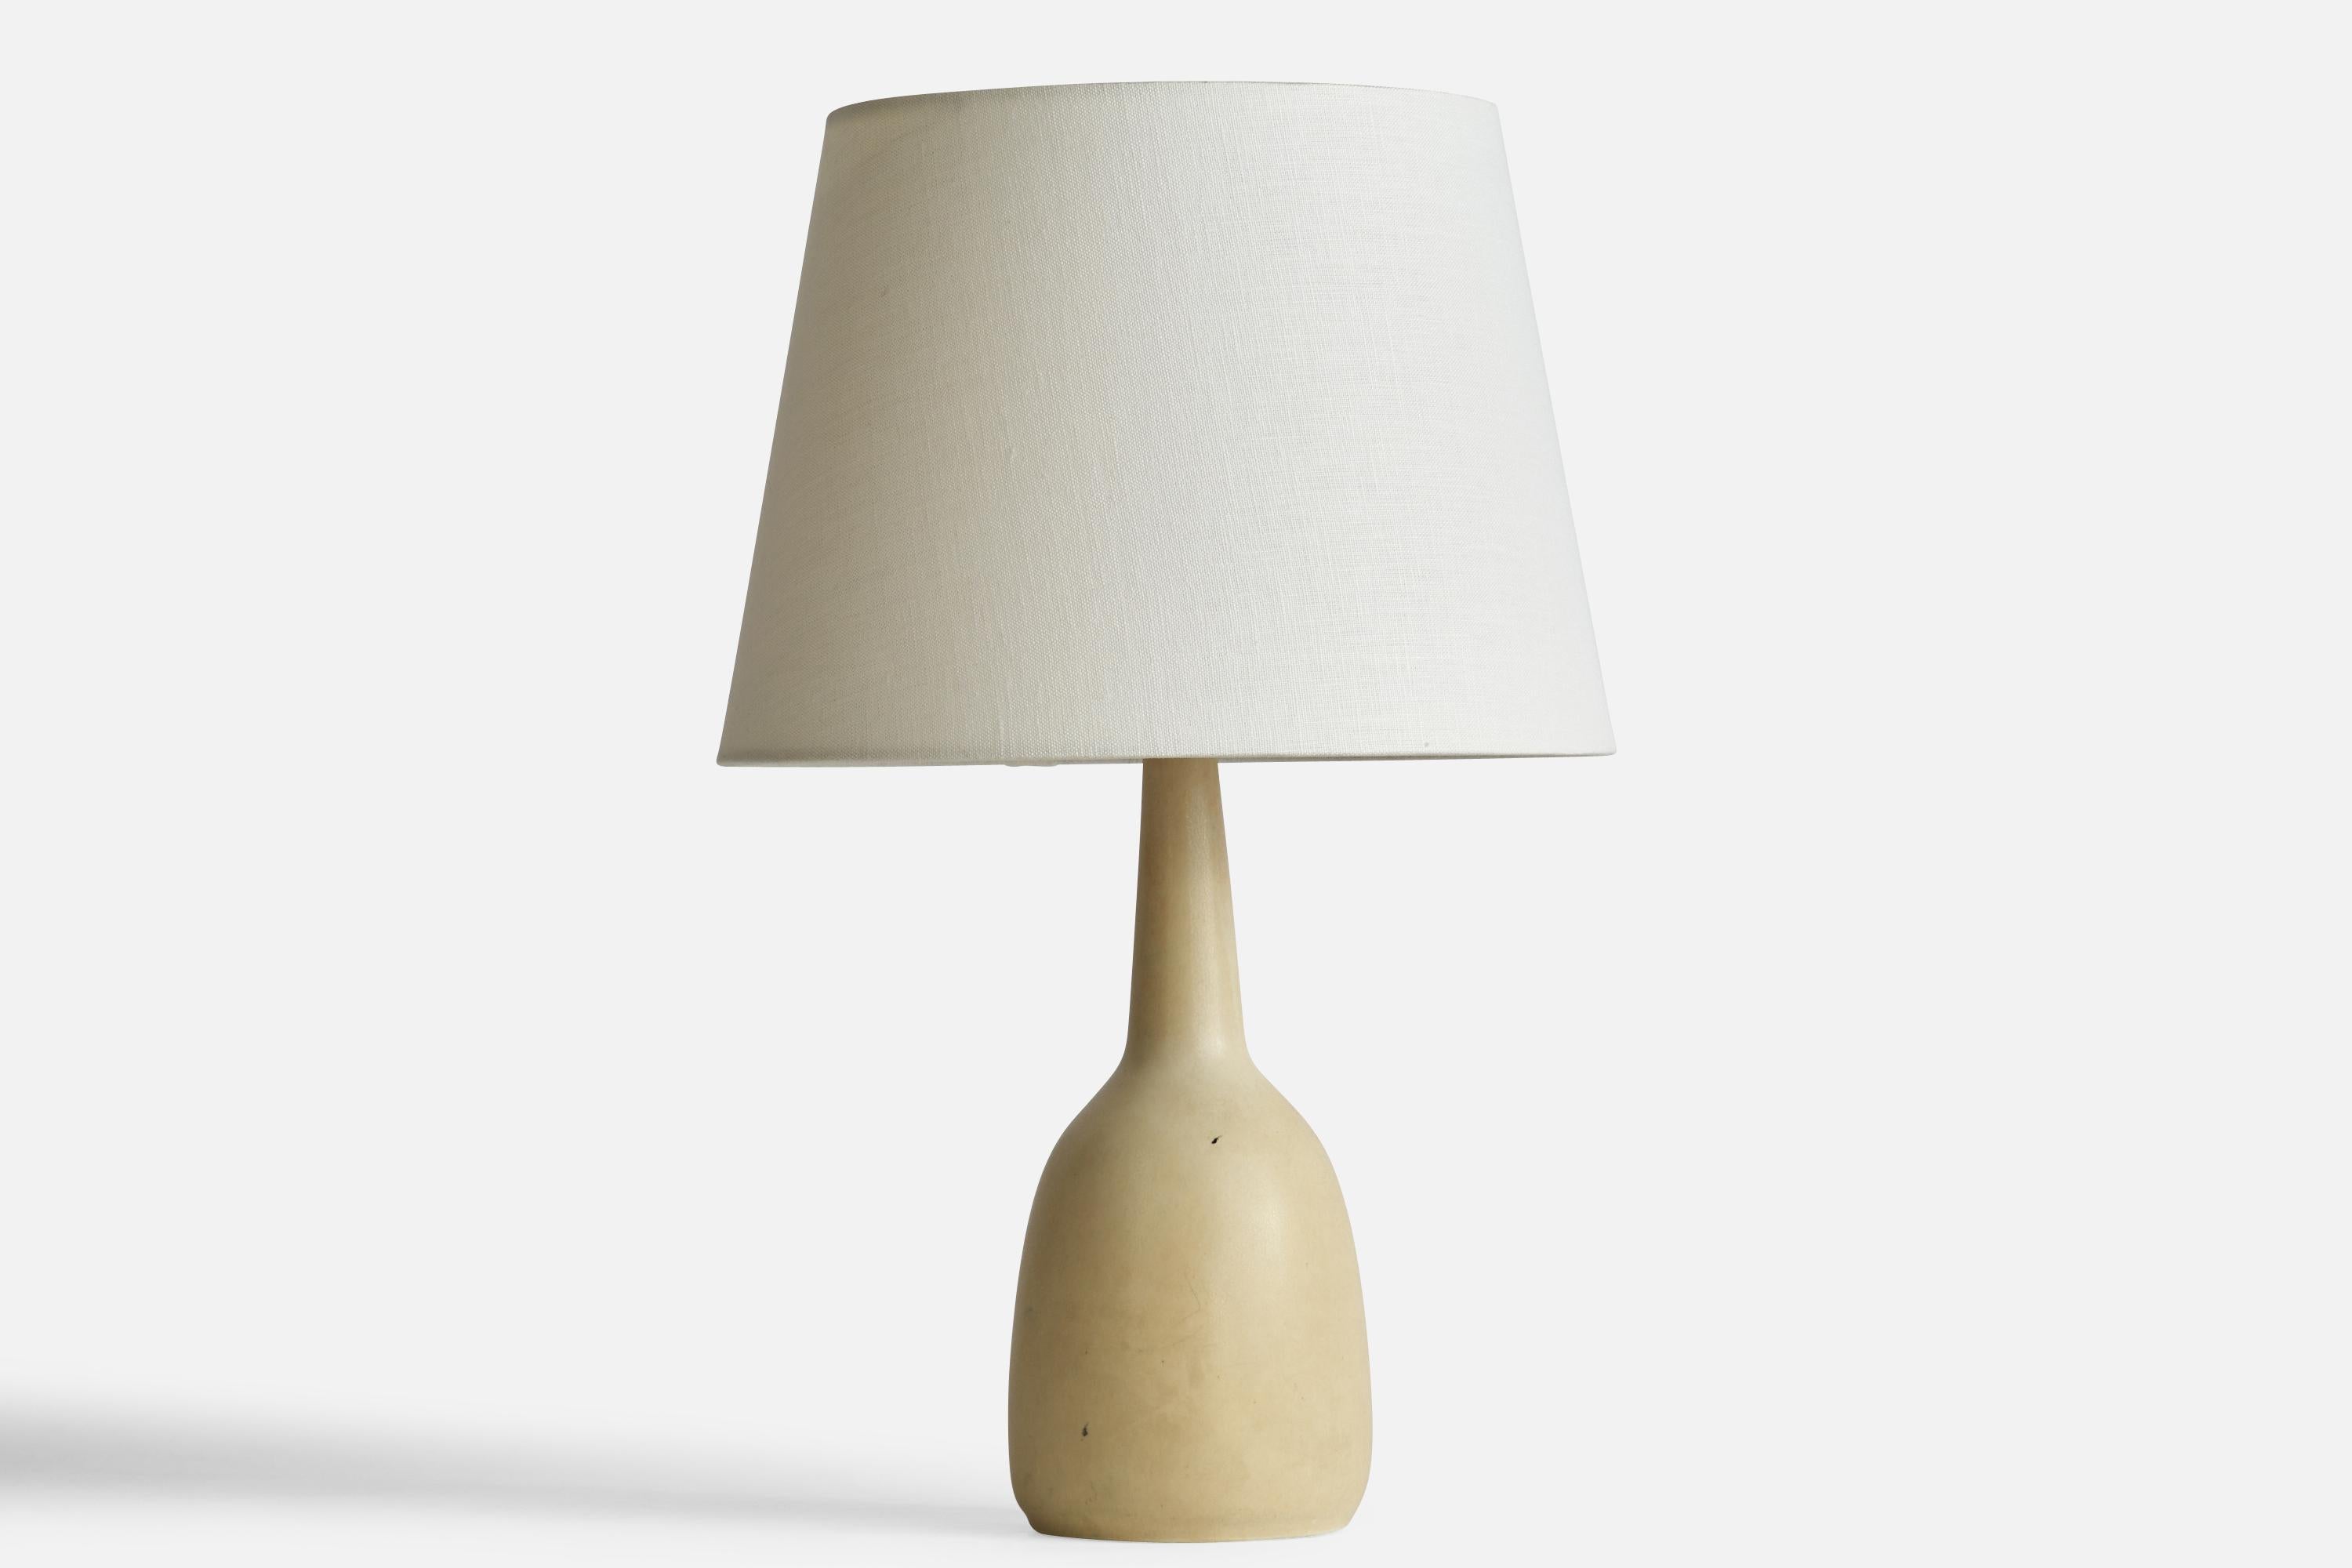 Lampe de table en grès émaillé beige, conçue par Per & Annelise Linneman-Schmidt et produite par Palshus, Danemark, années 1960.

Dimensions de la lampe (pouces) : 13.75